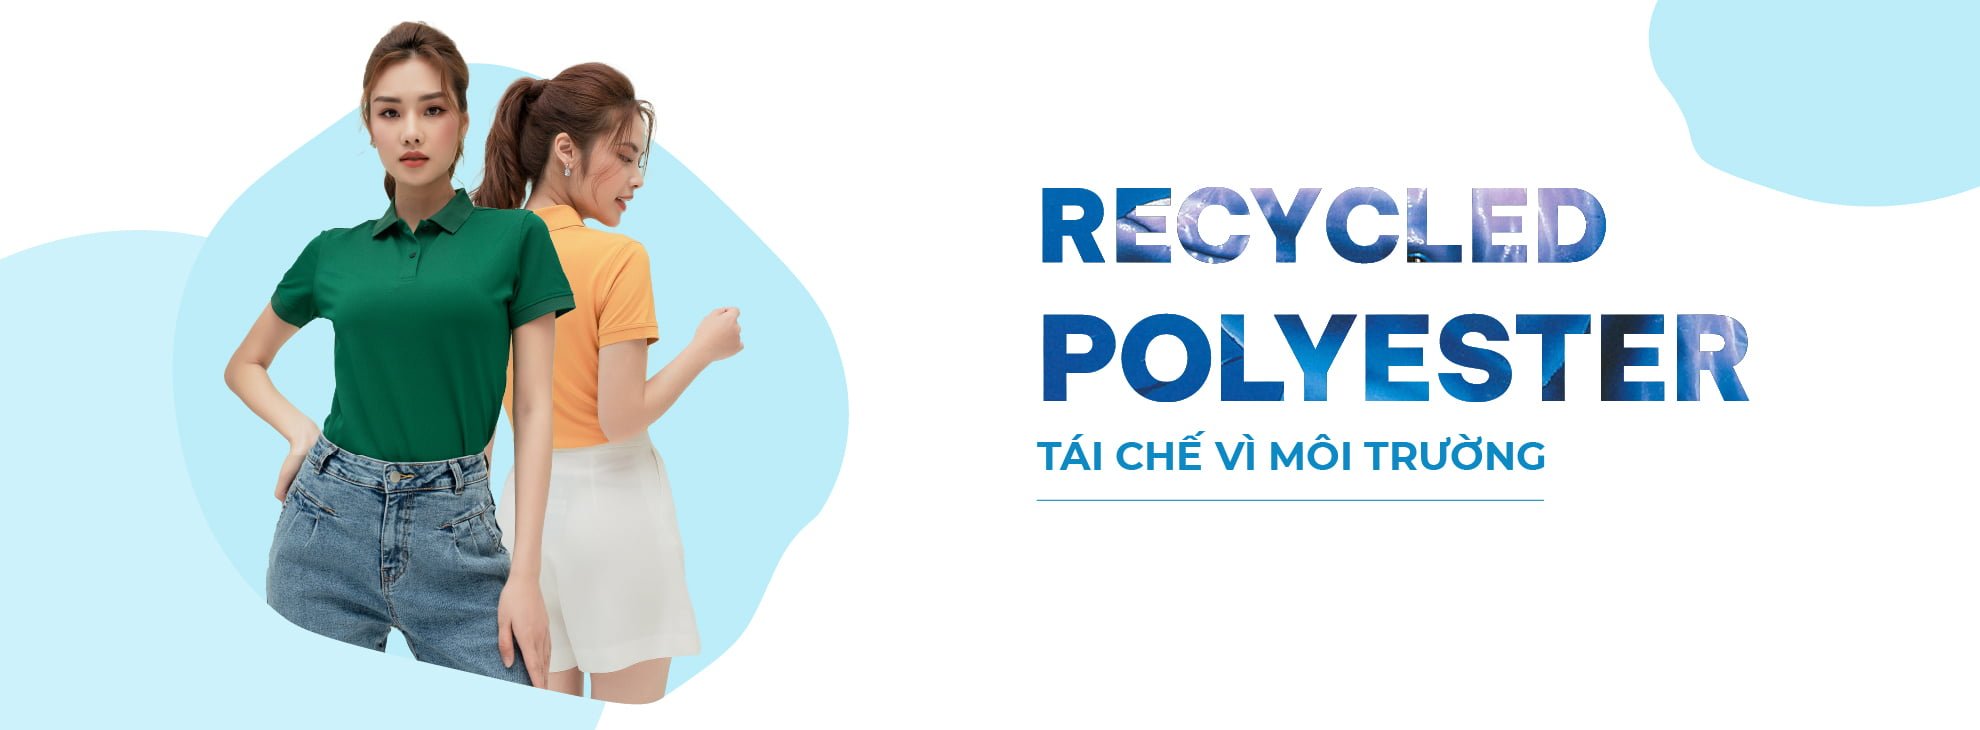 Rerycled Polyester - Tái chế vì môi trường